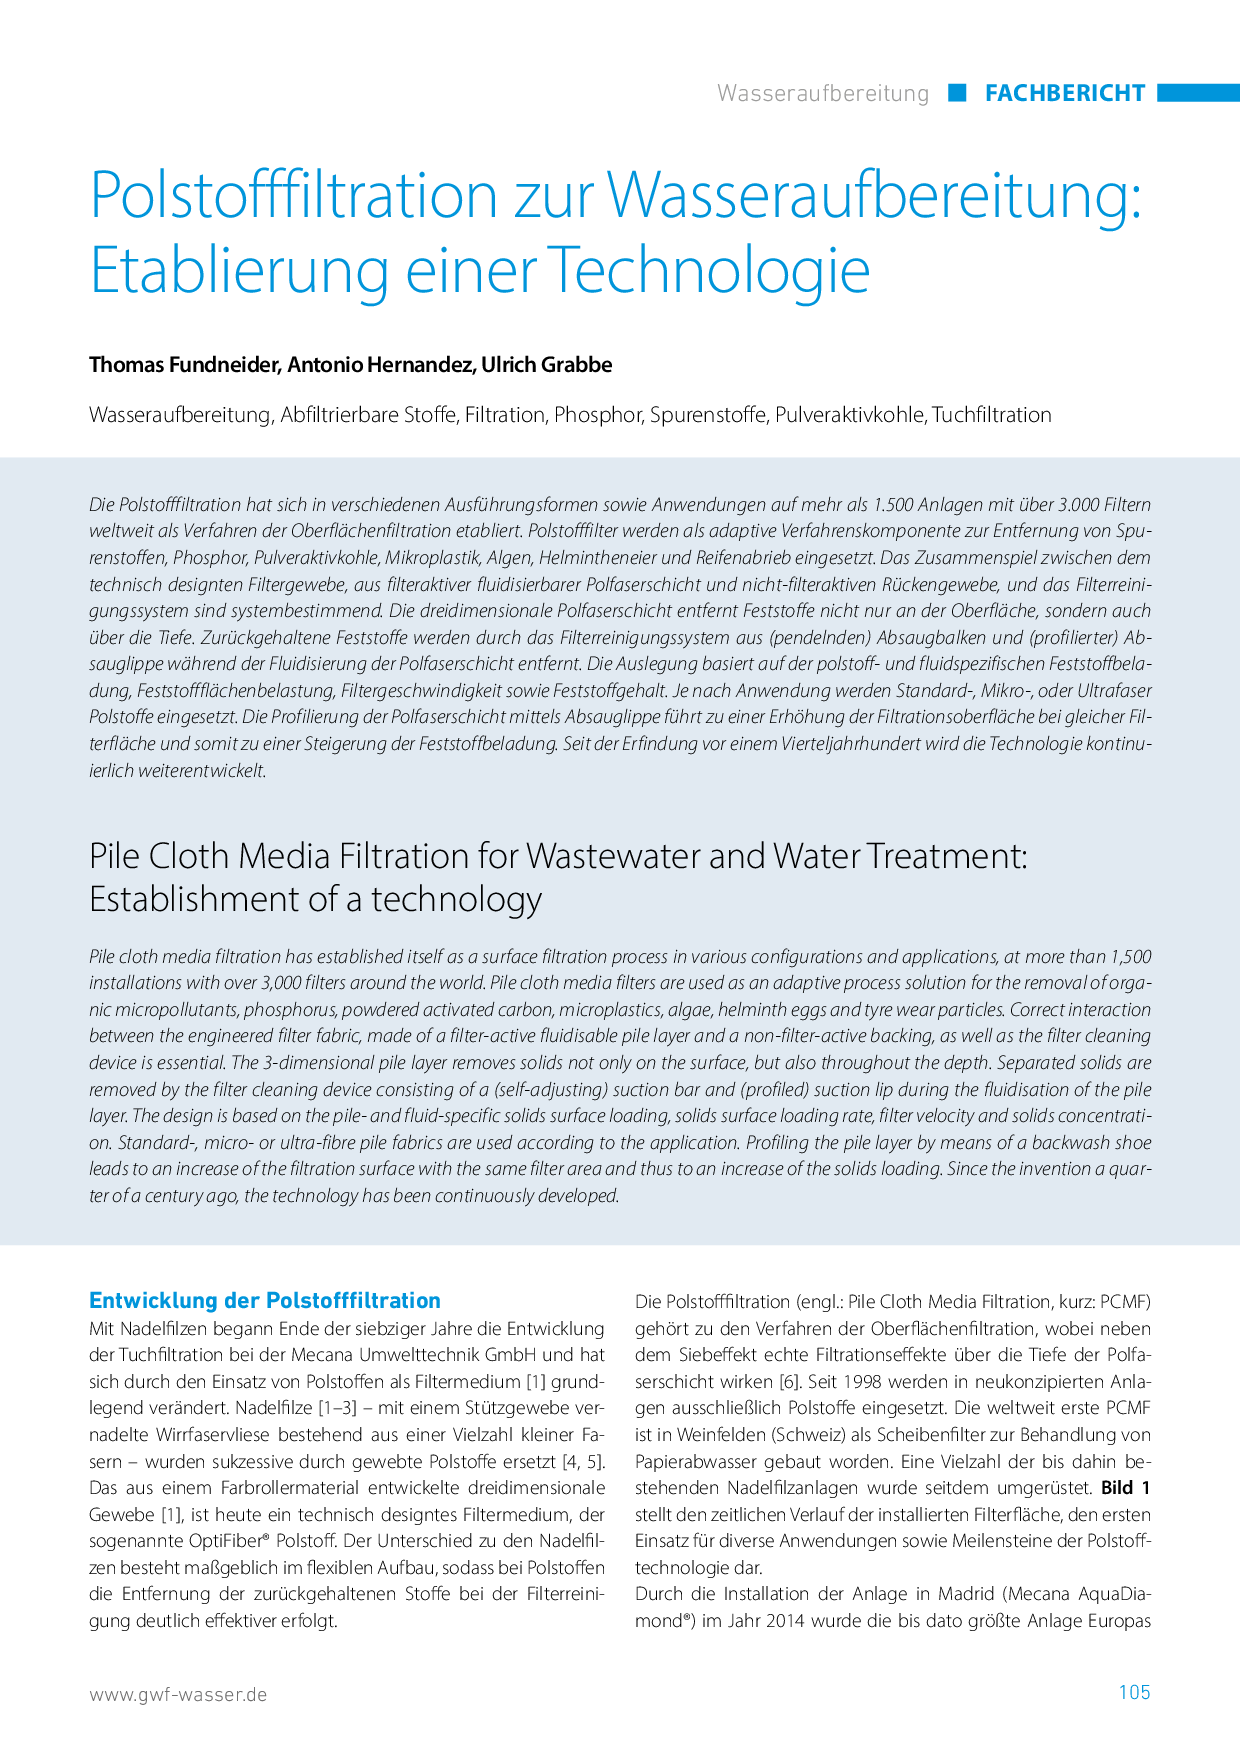 Polstofffiltration zur Wasseraufbereitung: Etablierung einer Technologie